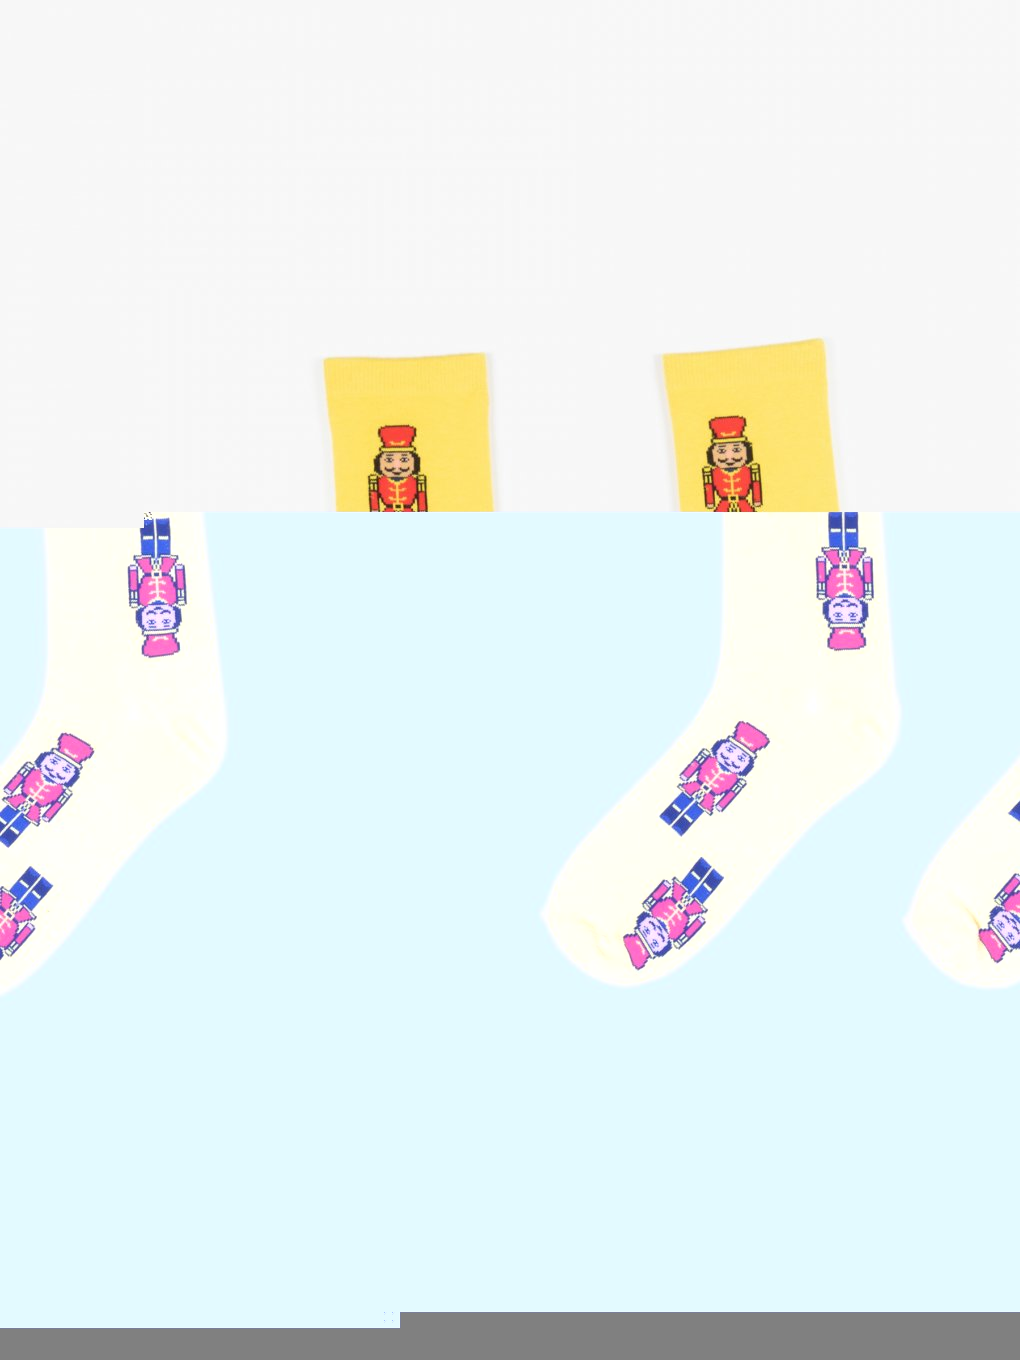 Ponožky s vianočným motívom pánske